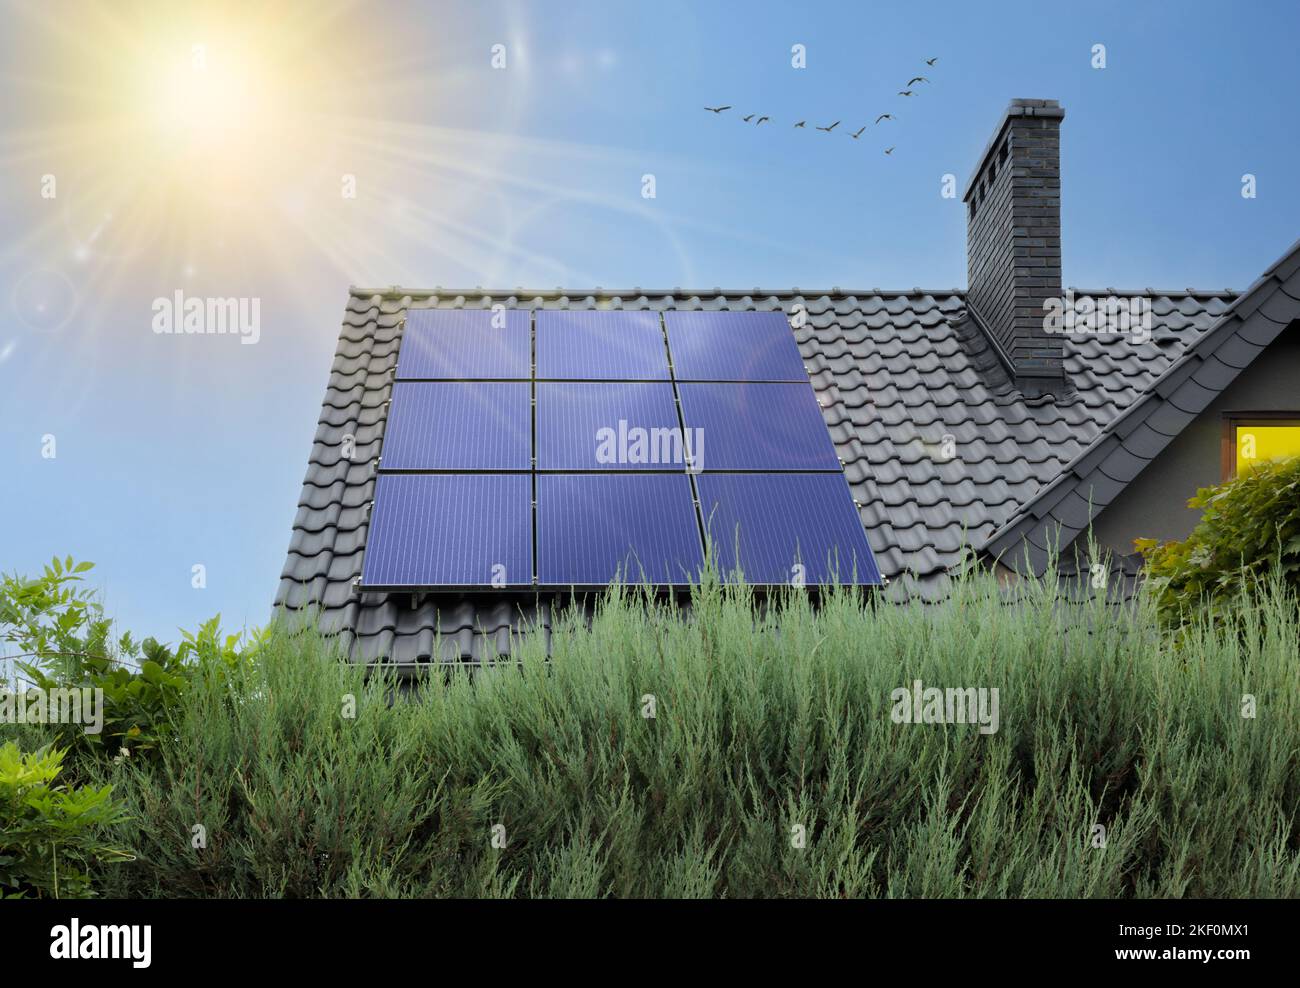 Schönes modernes Haus mit Sonnenkollektoren. Klarer Himmel, Sonne. Haus mit Photovoltaik auf dem Dach und Sonnenstrahlen. Stockfoto